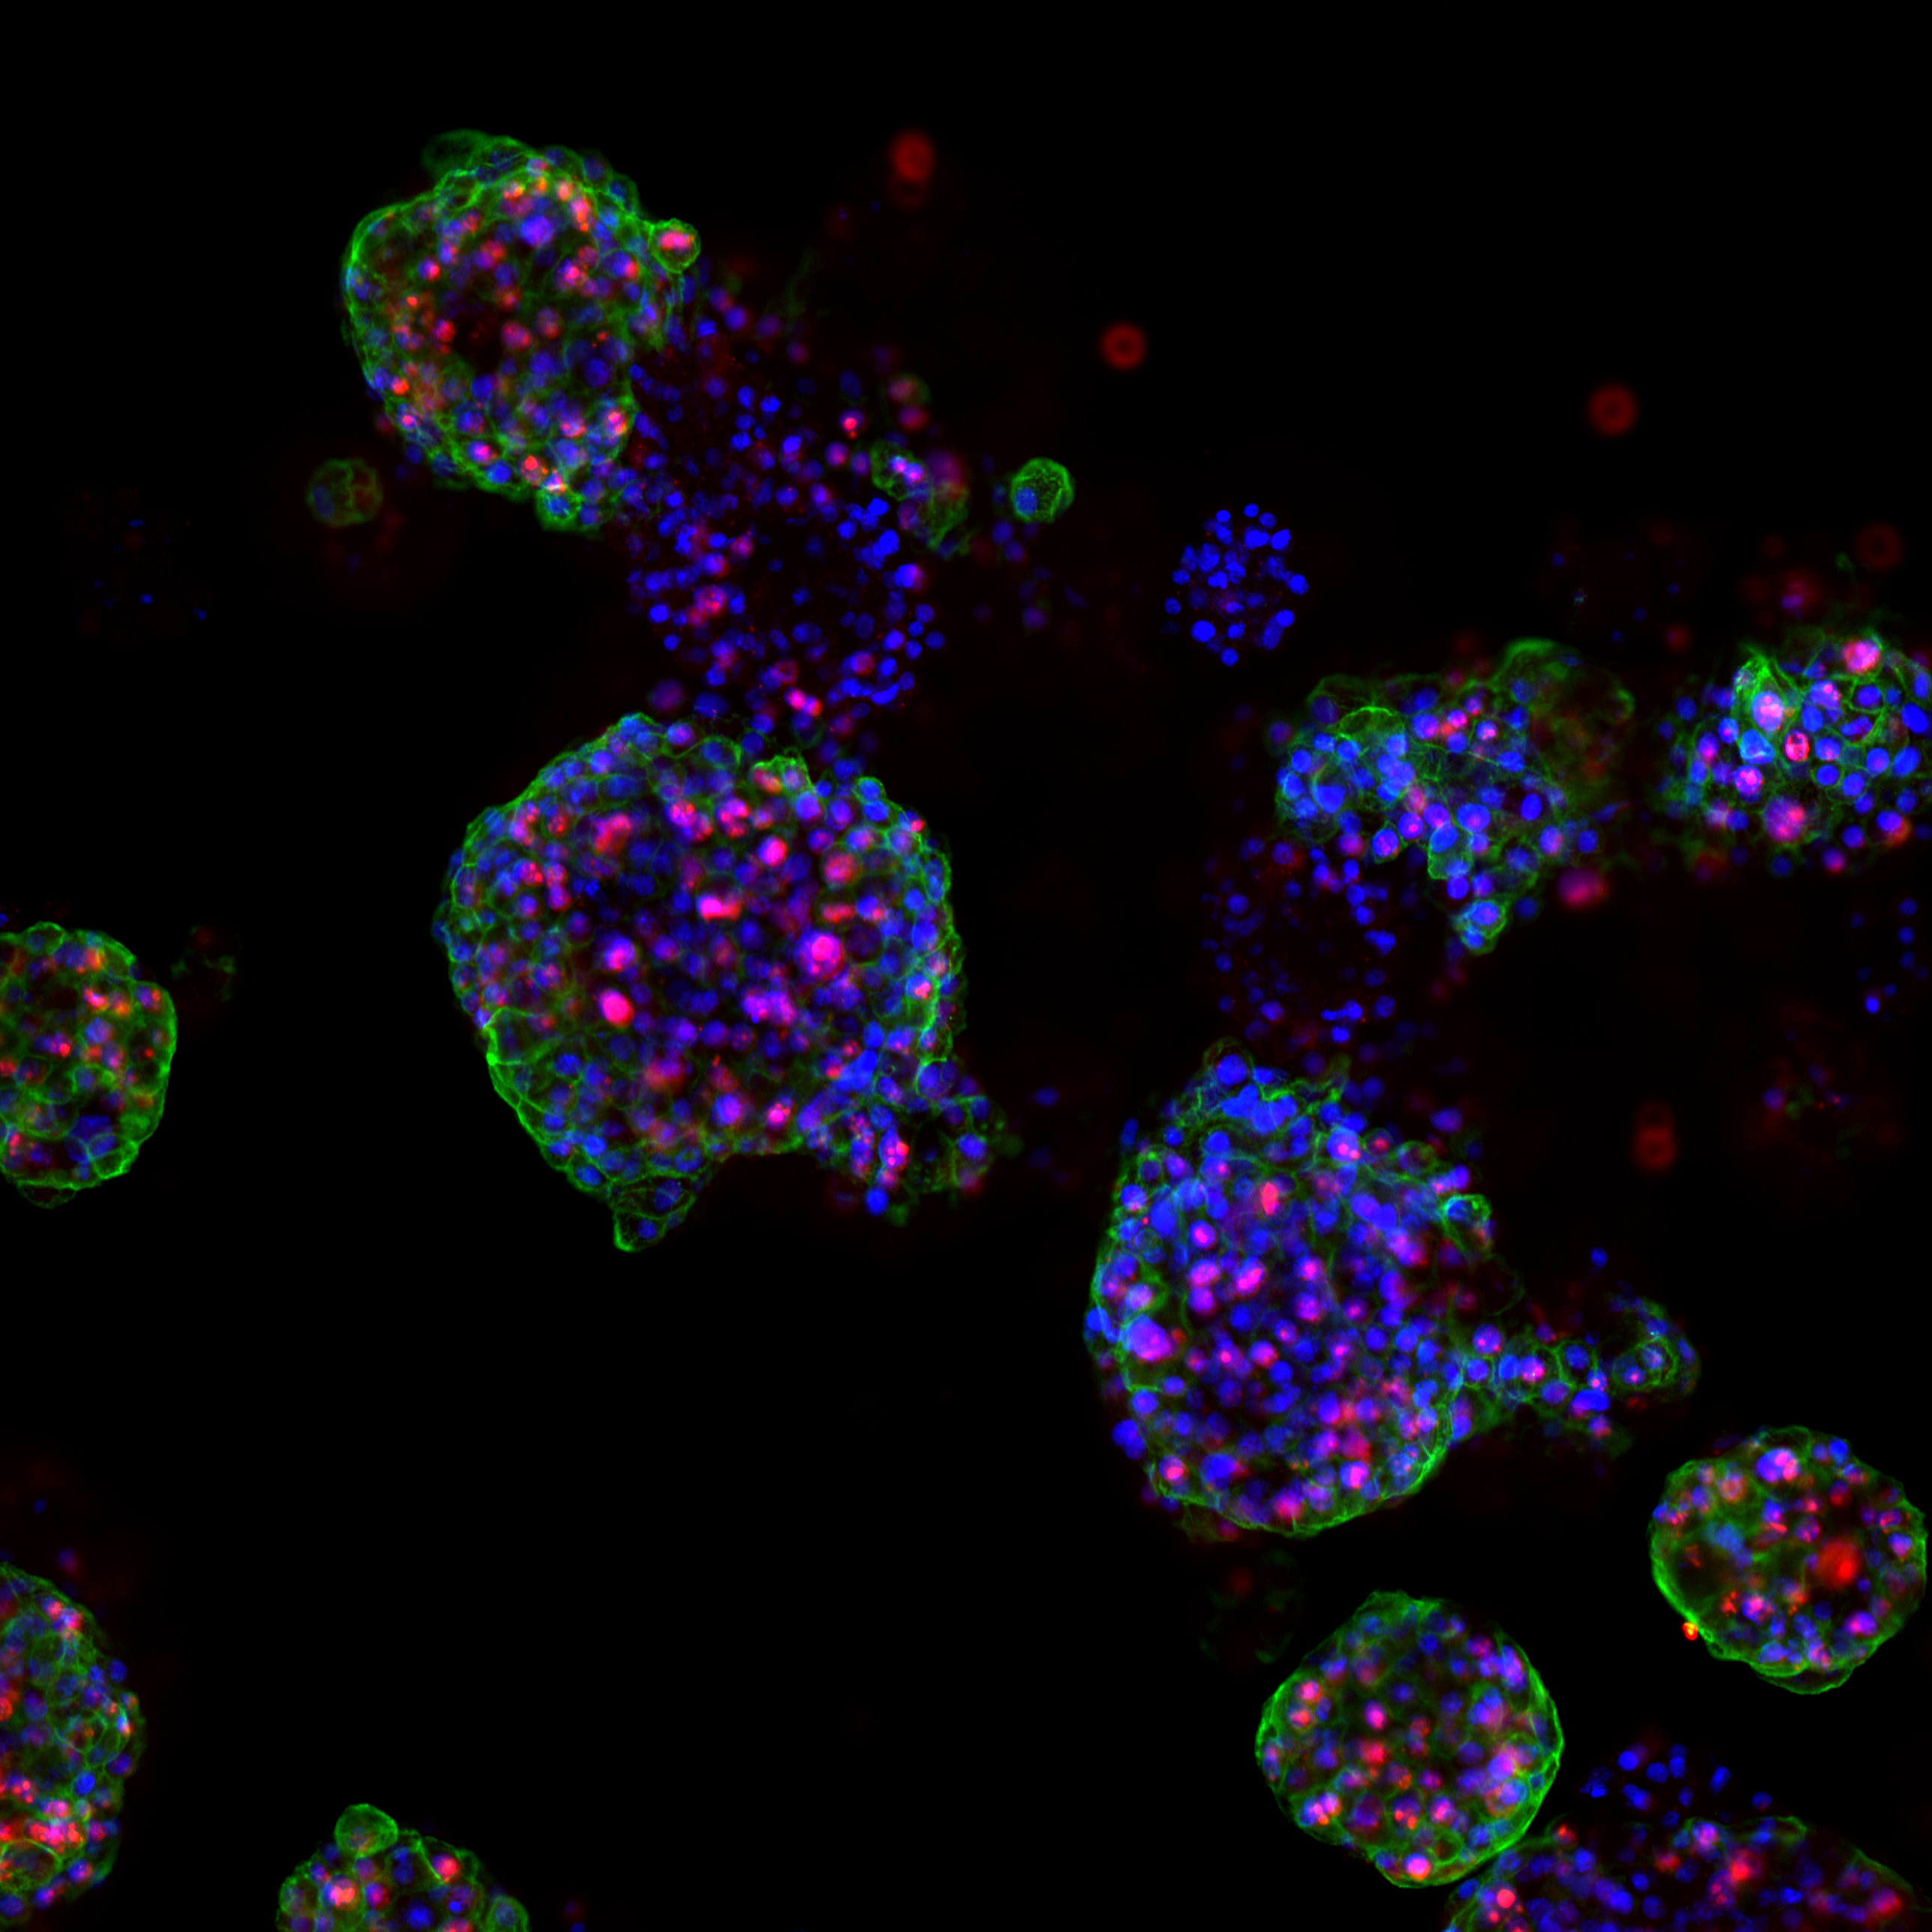 Wuchernde Prostatakrebs-Organoide: Tumor-Rezeptoren (grün), sich teilende Zellen (rot) und DNA in den Zellkernen (blau).